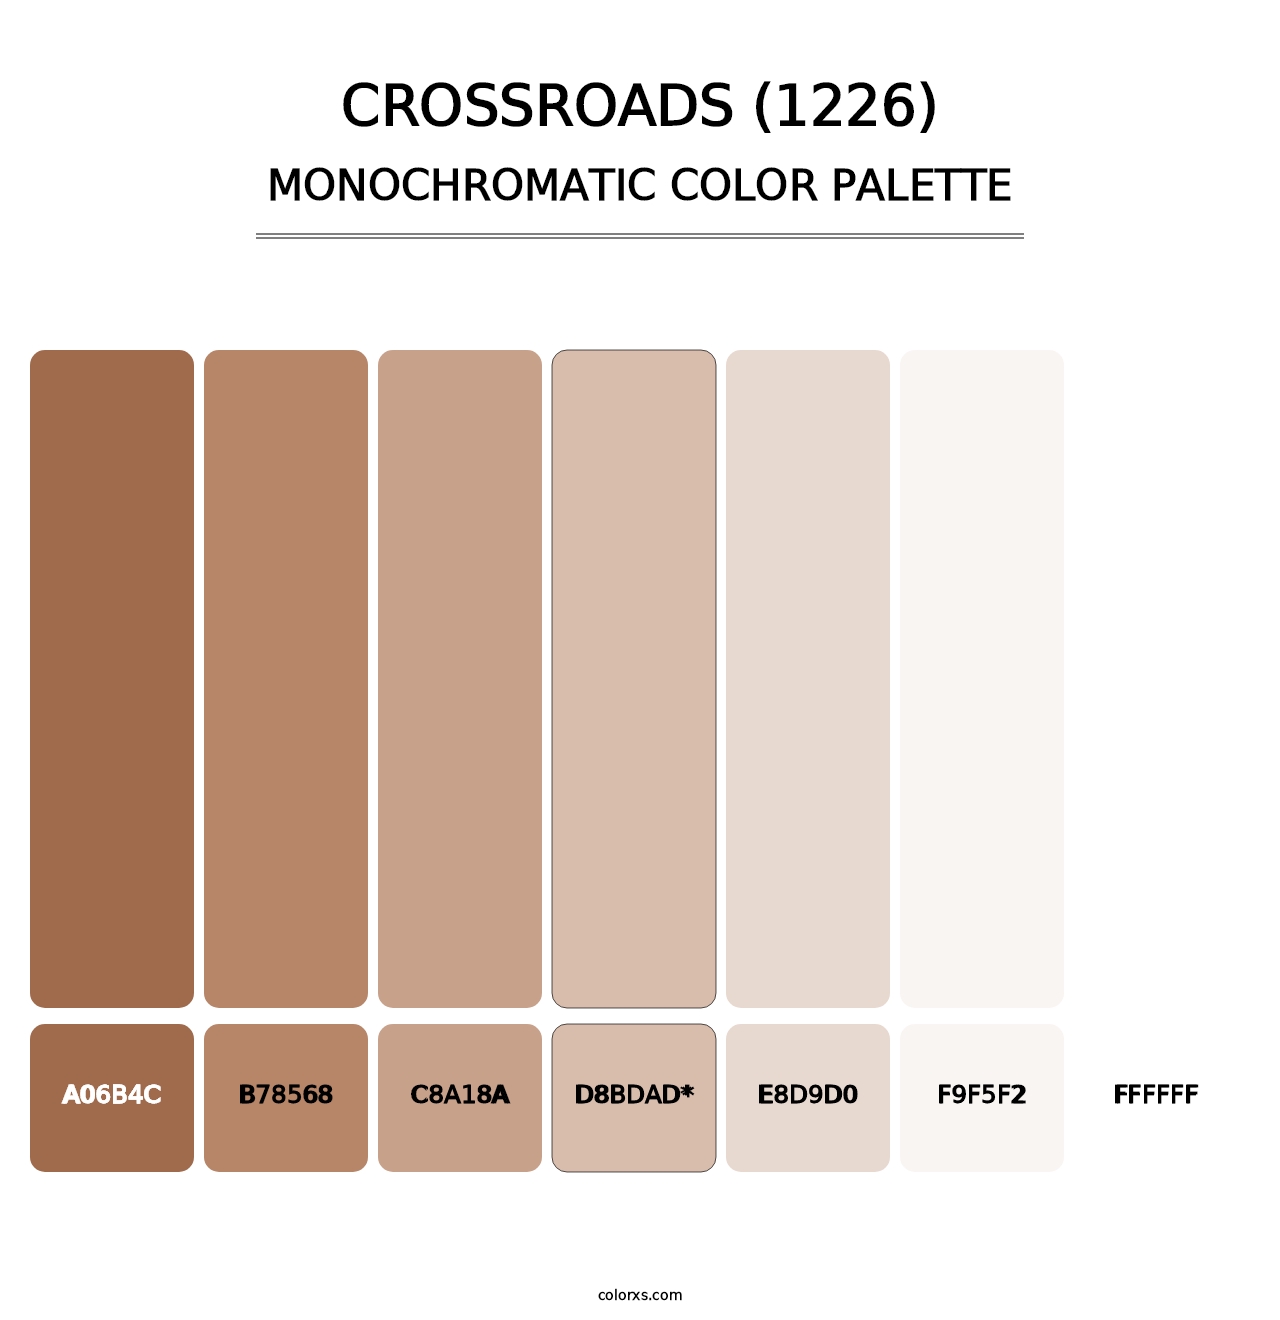 Crossroads (1226) - Monochromatic Color Palette